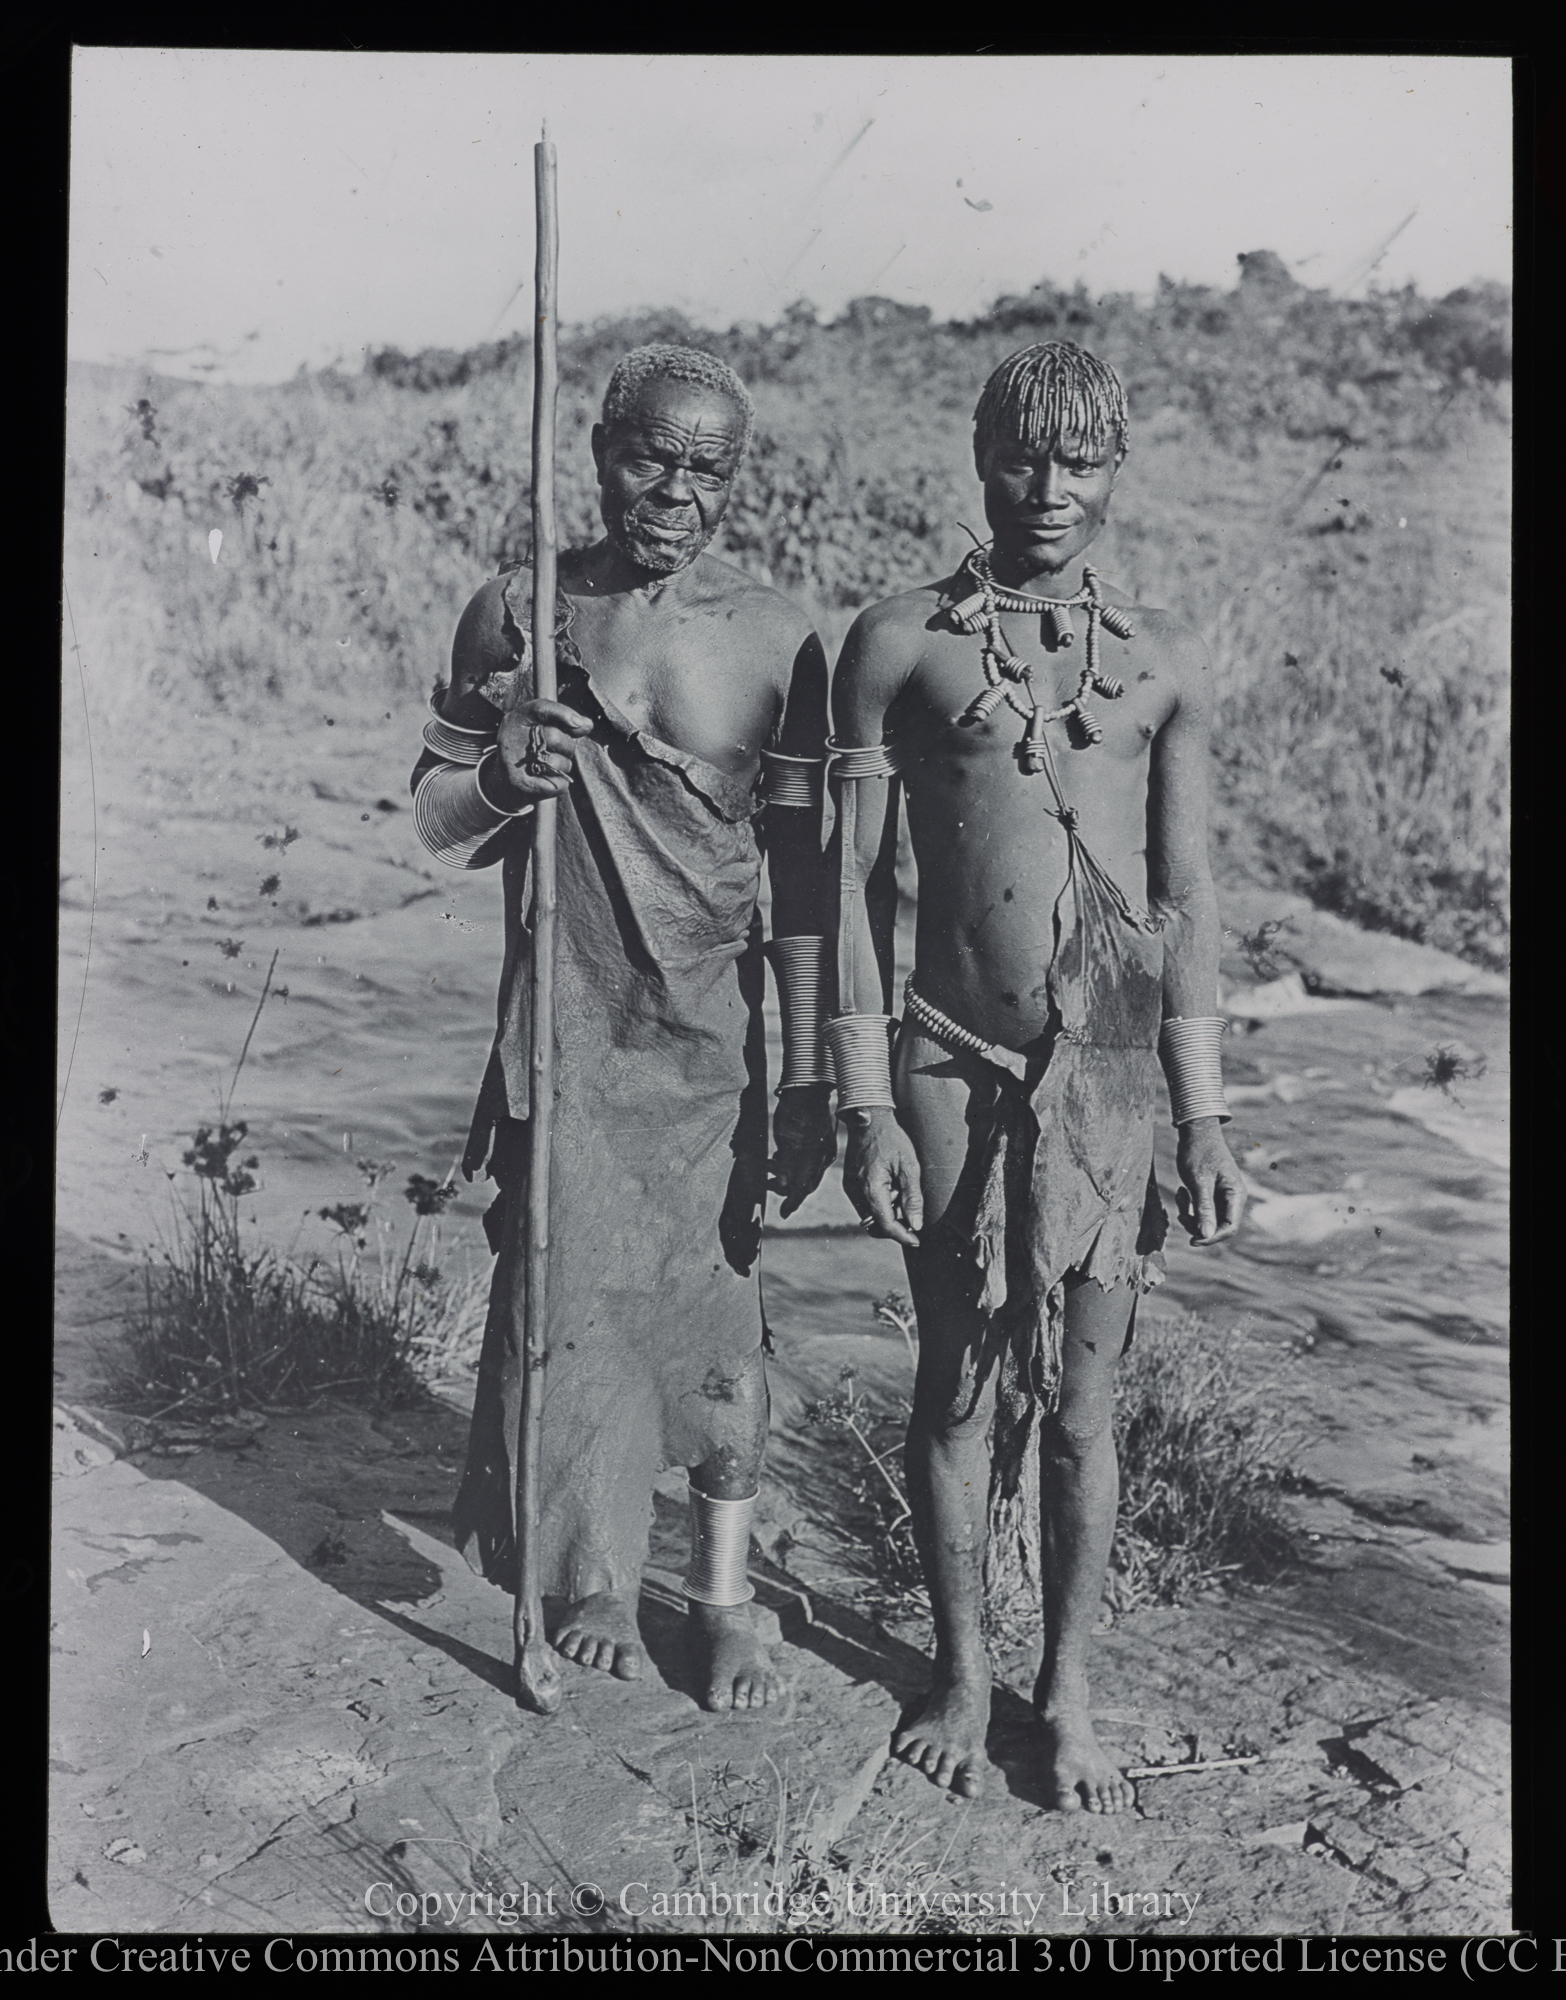 Two Kikuyu men, 1892 - 1914